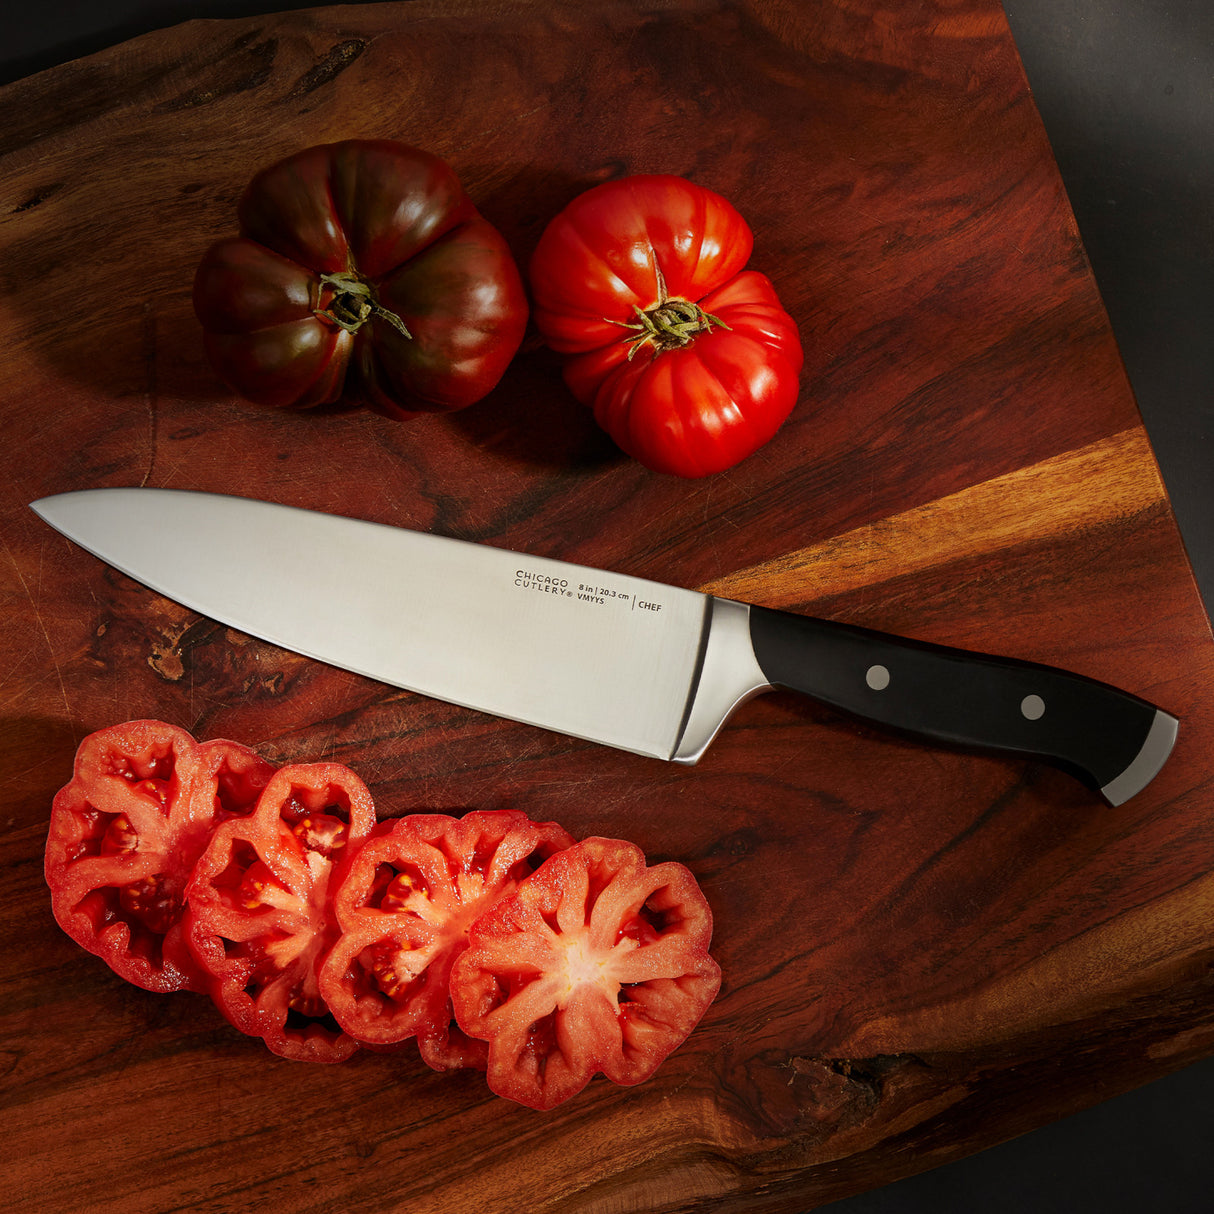 Armitage Chef Knife on a cutting board